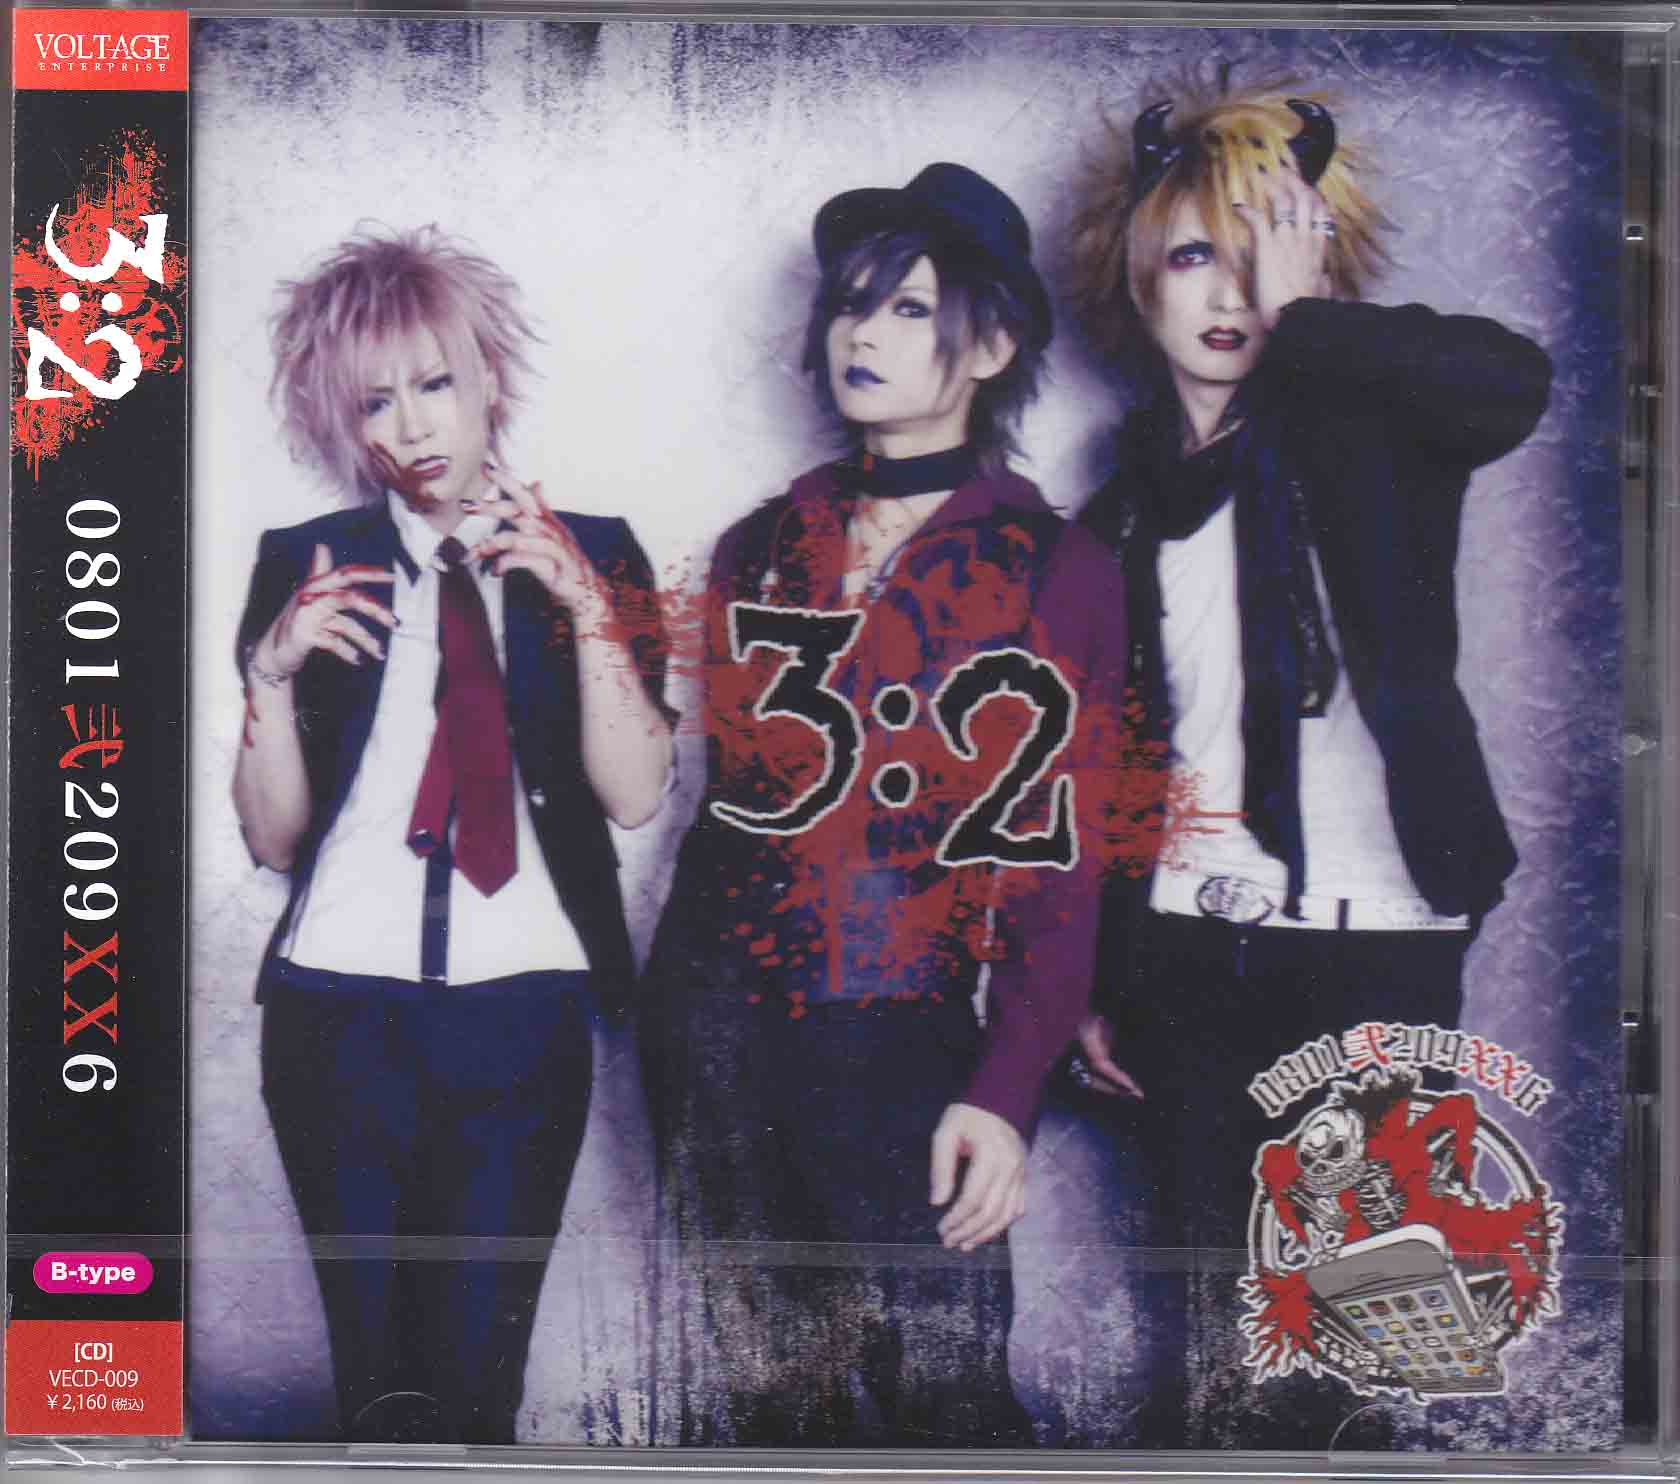 ゼロハチ の CD 3：2【B-type】